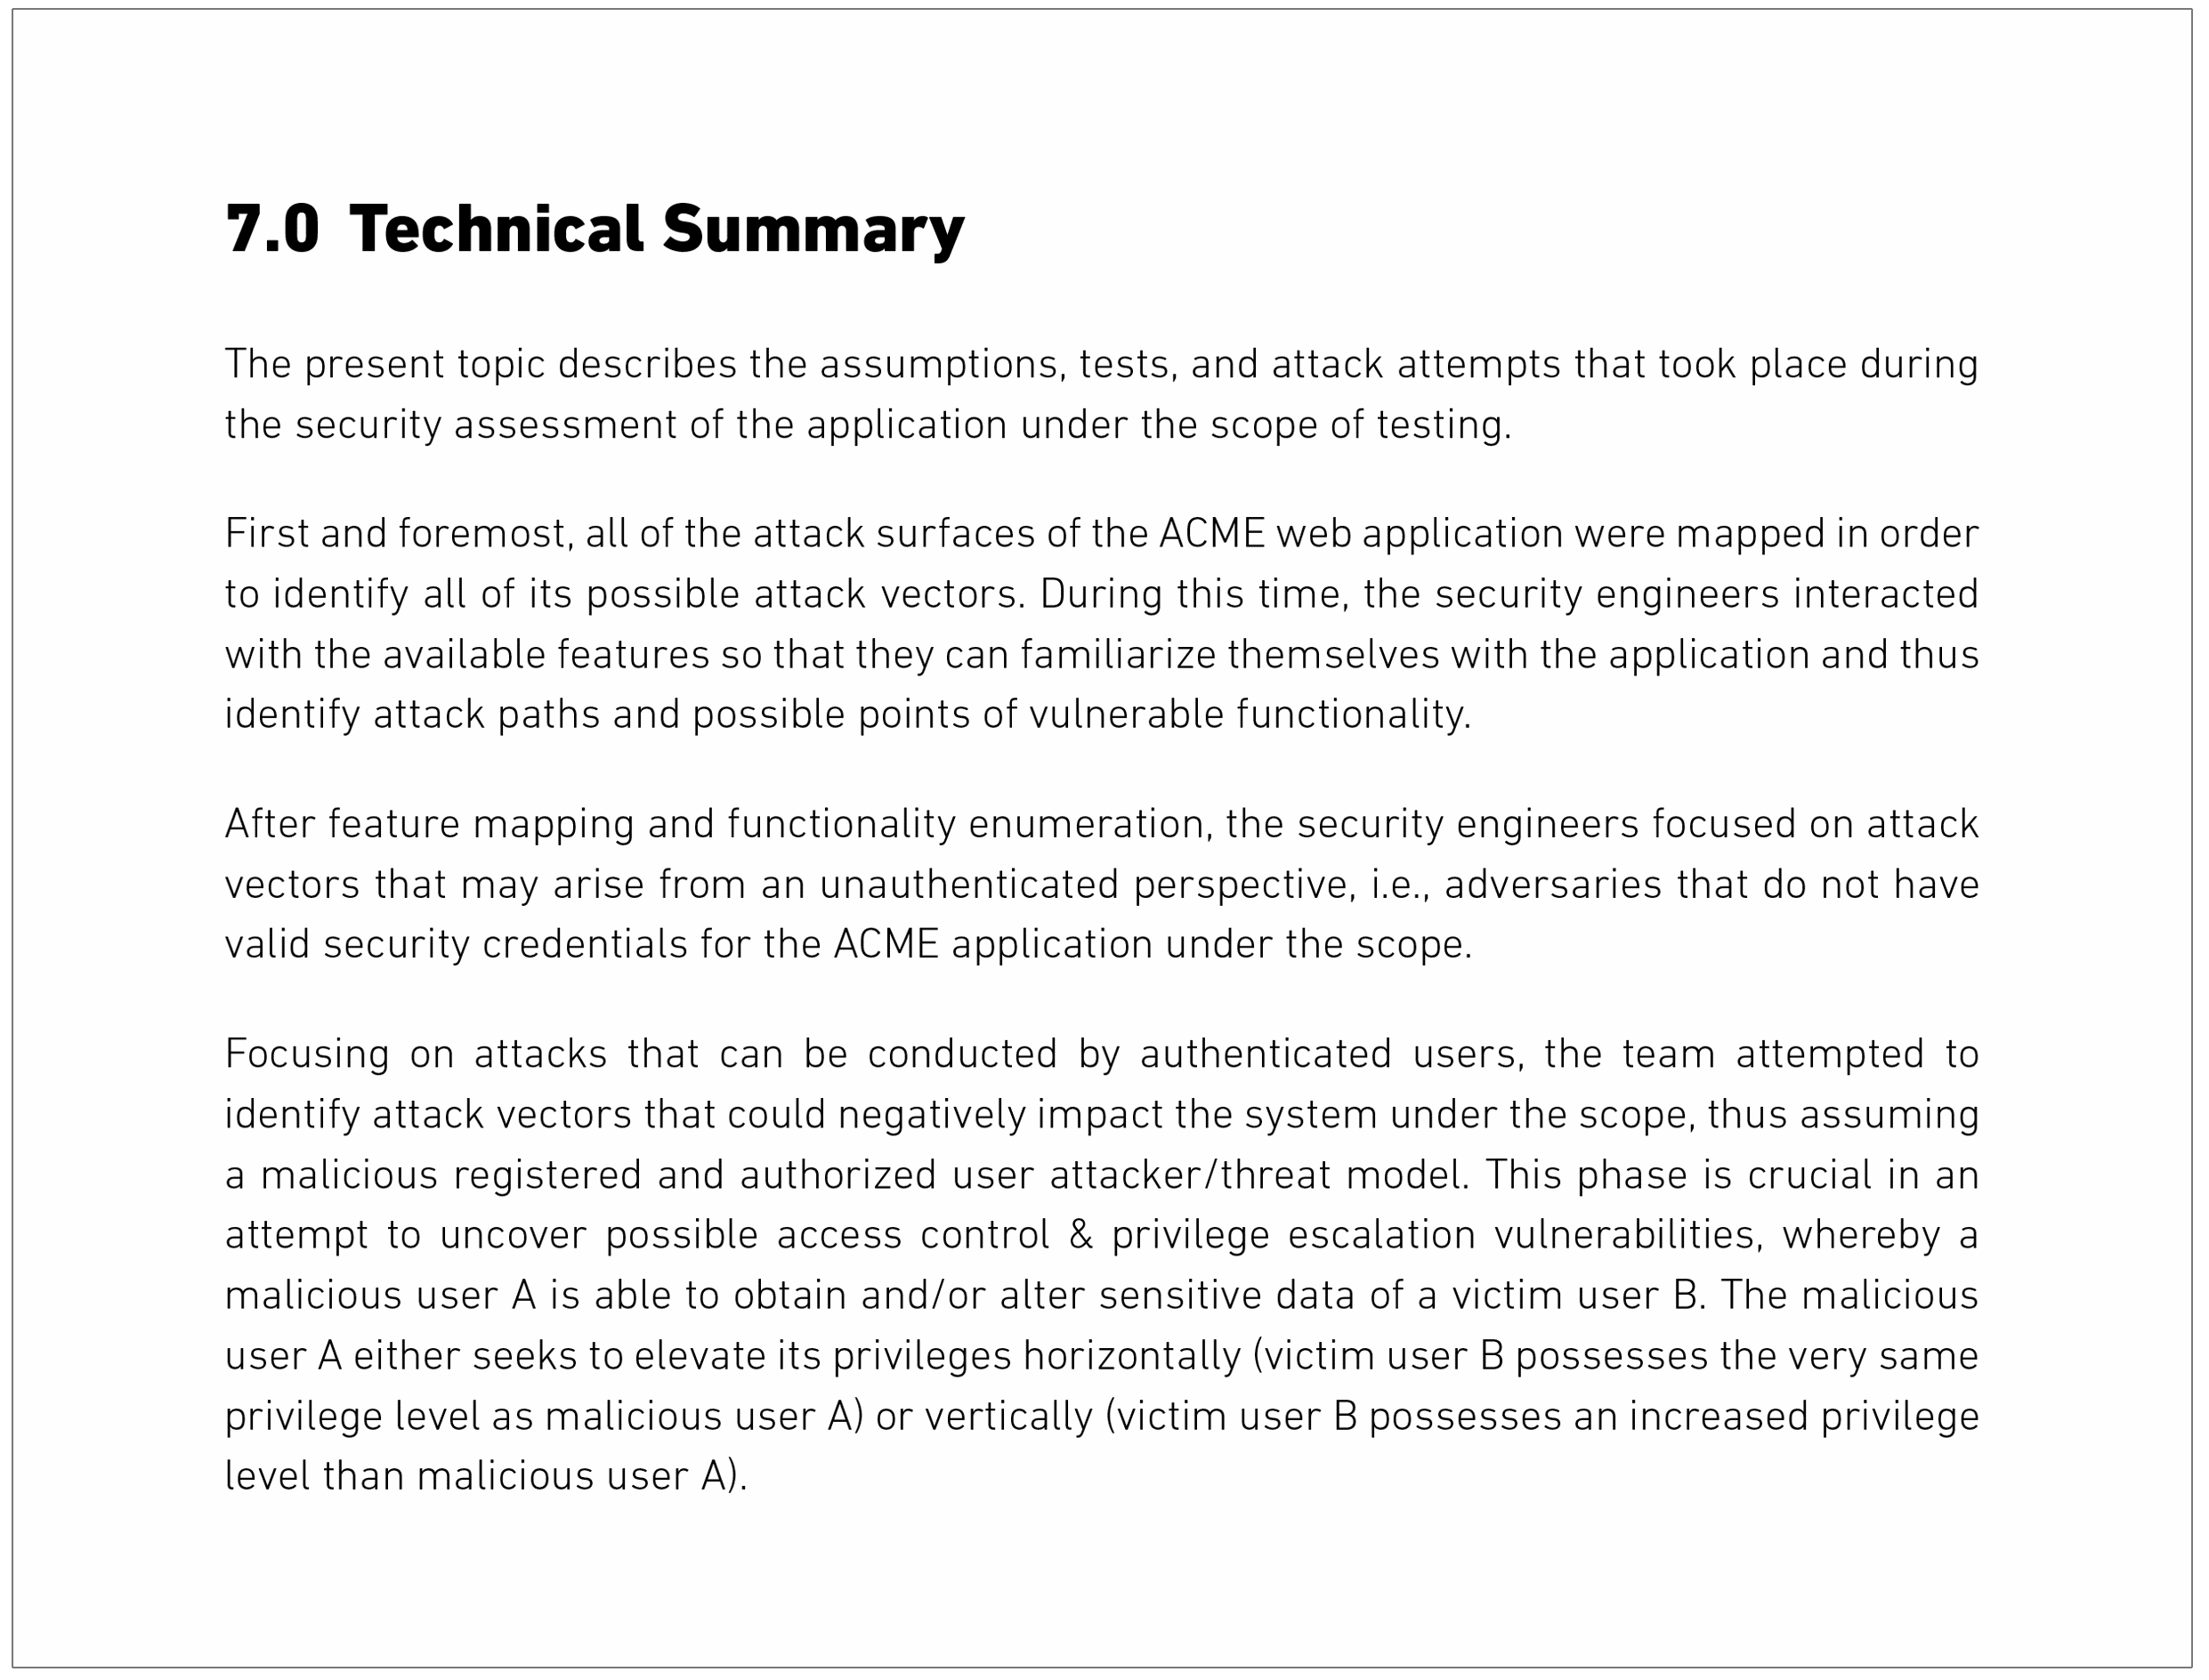 Technical summary